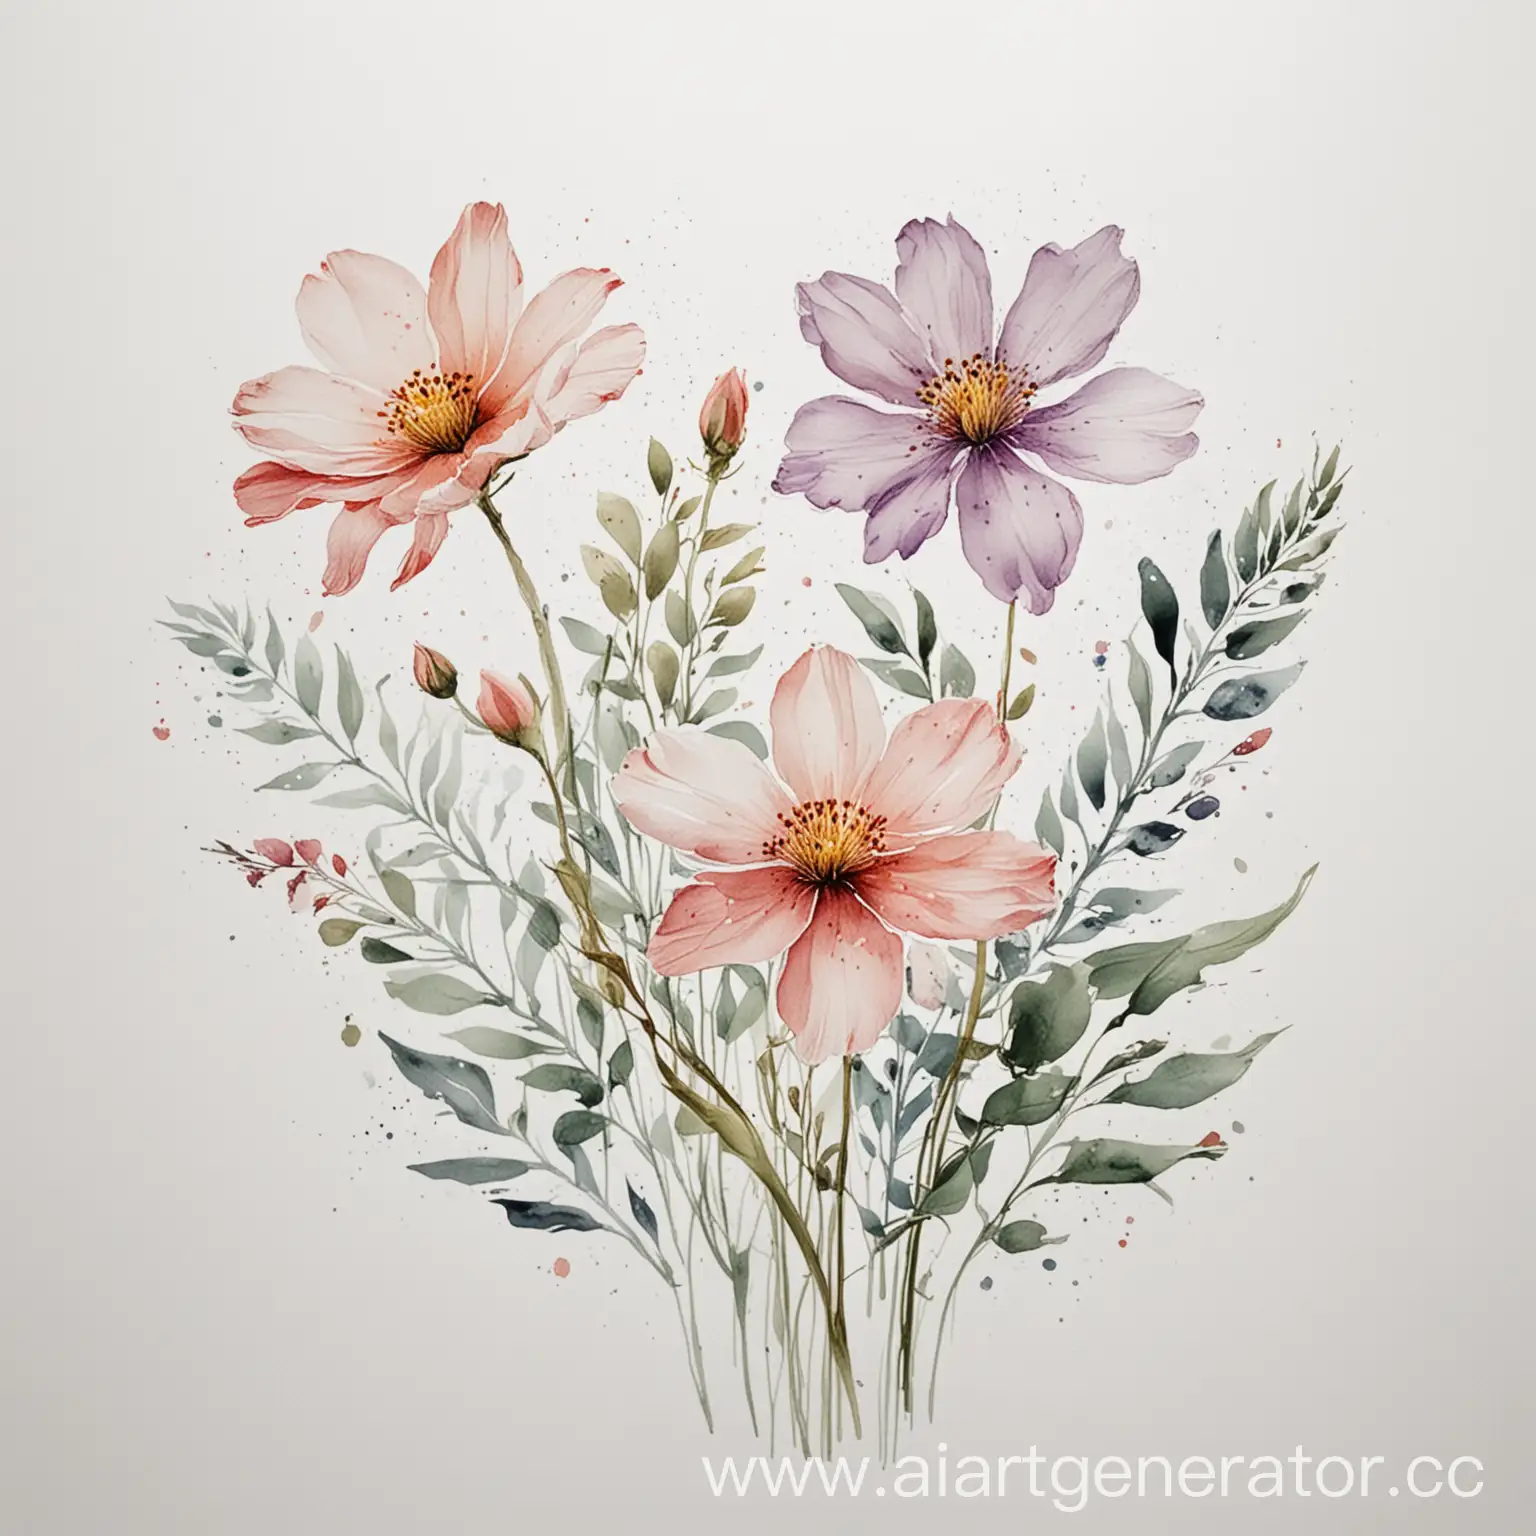  рисунок акварелью цветы легкие на белом фоне минимализм